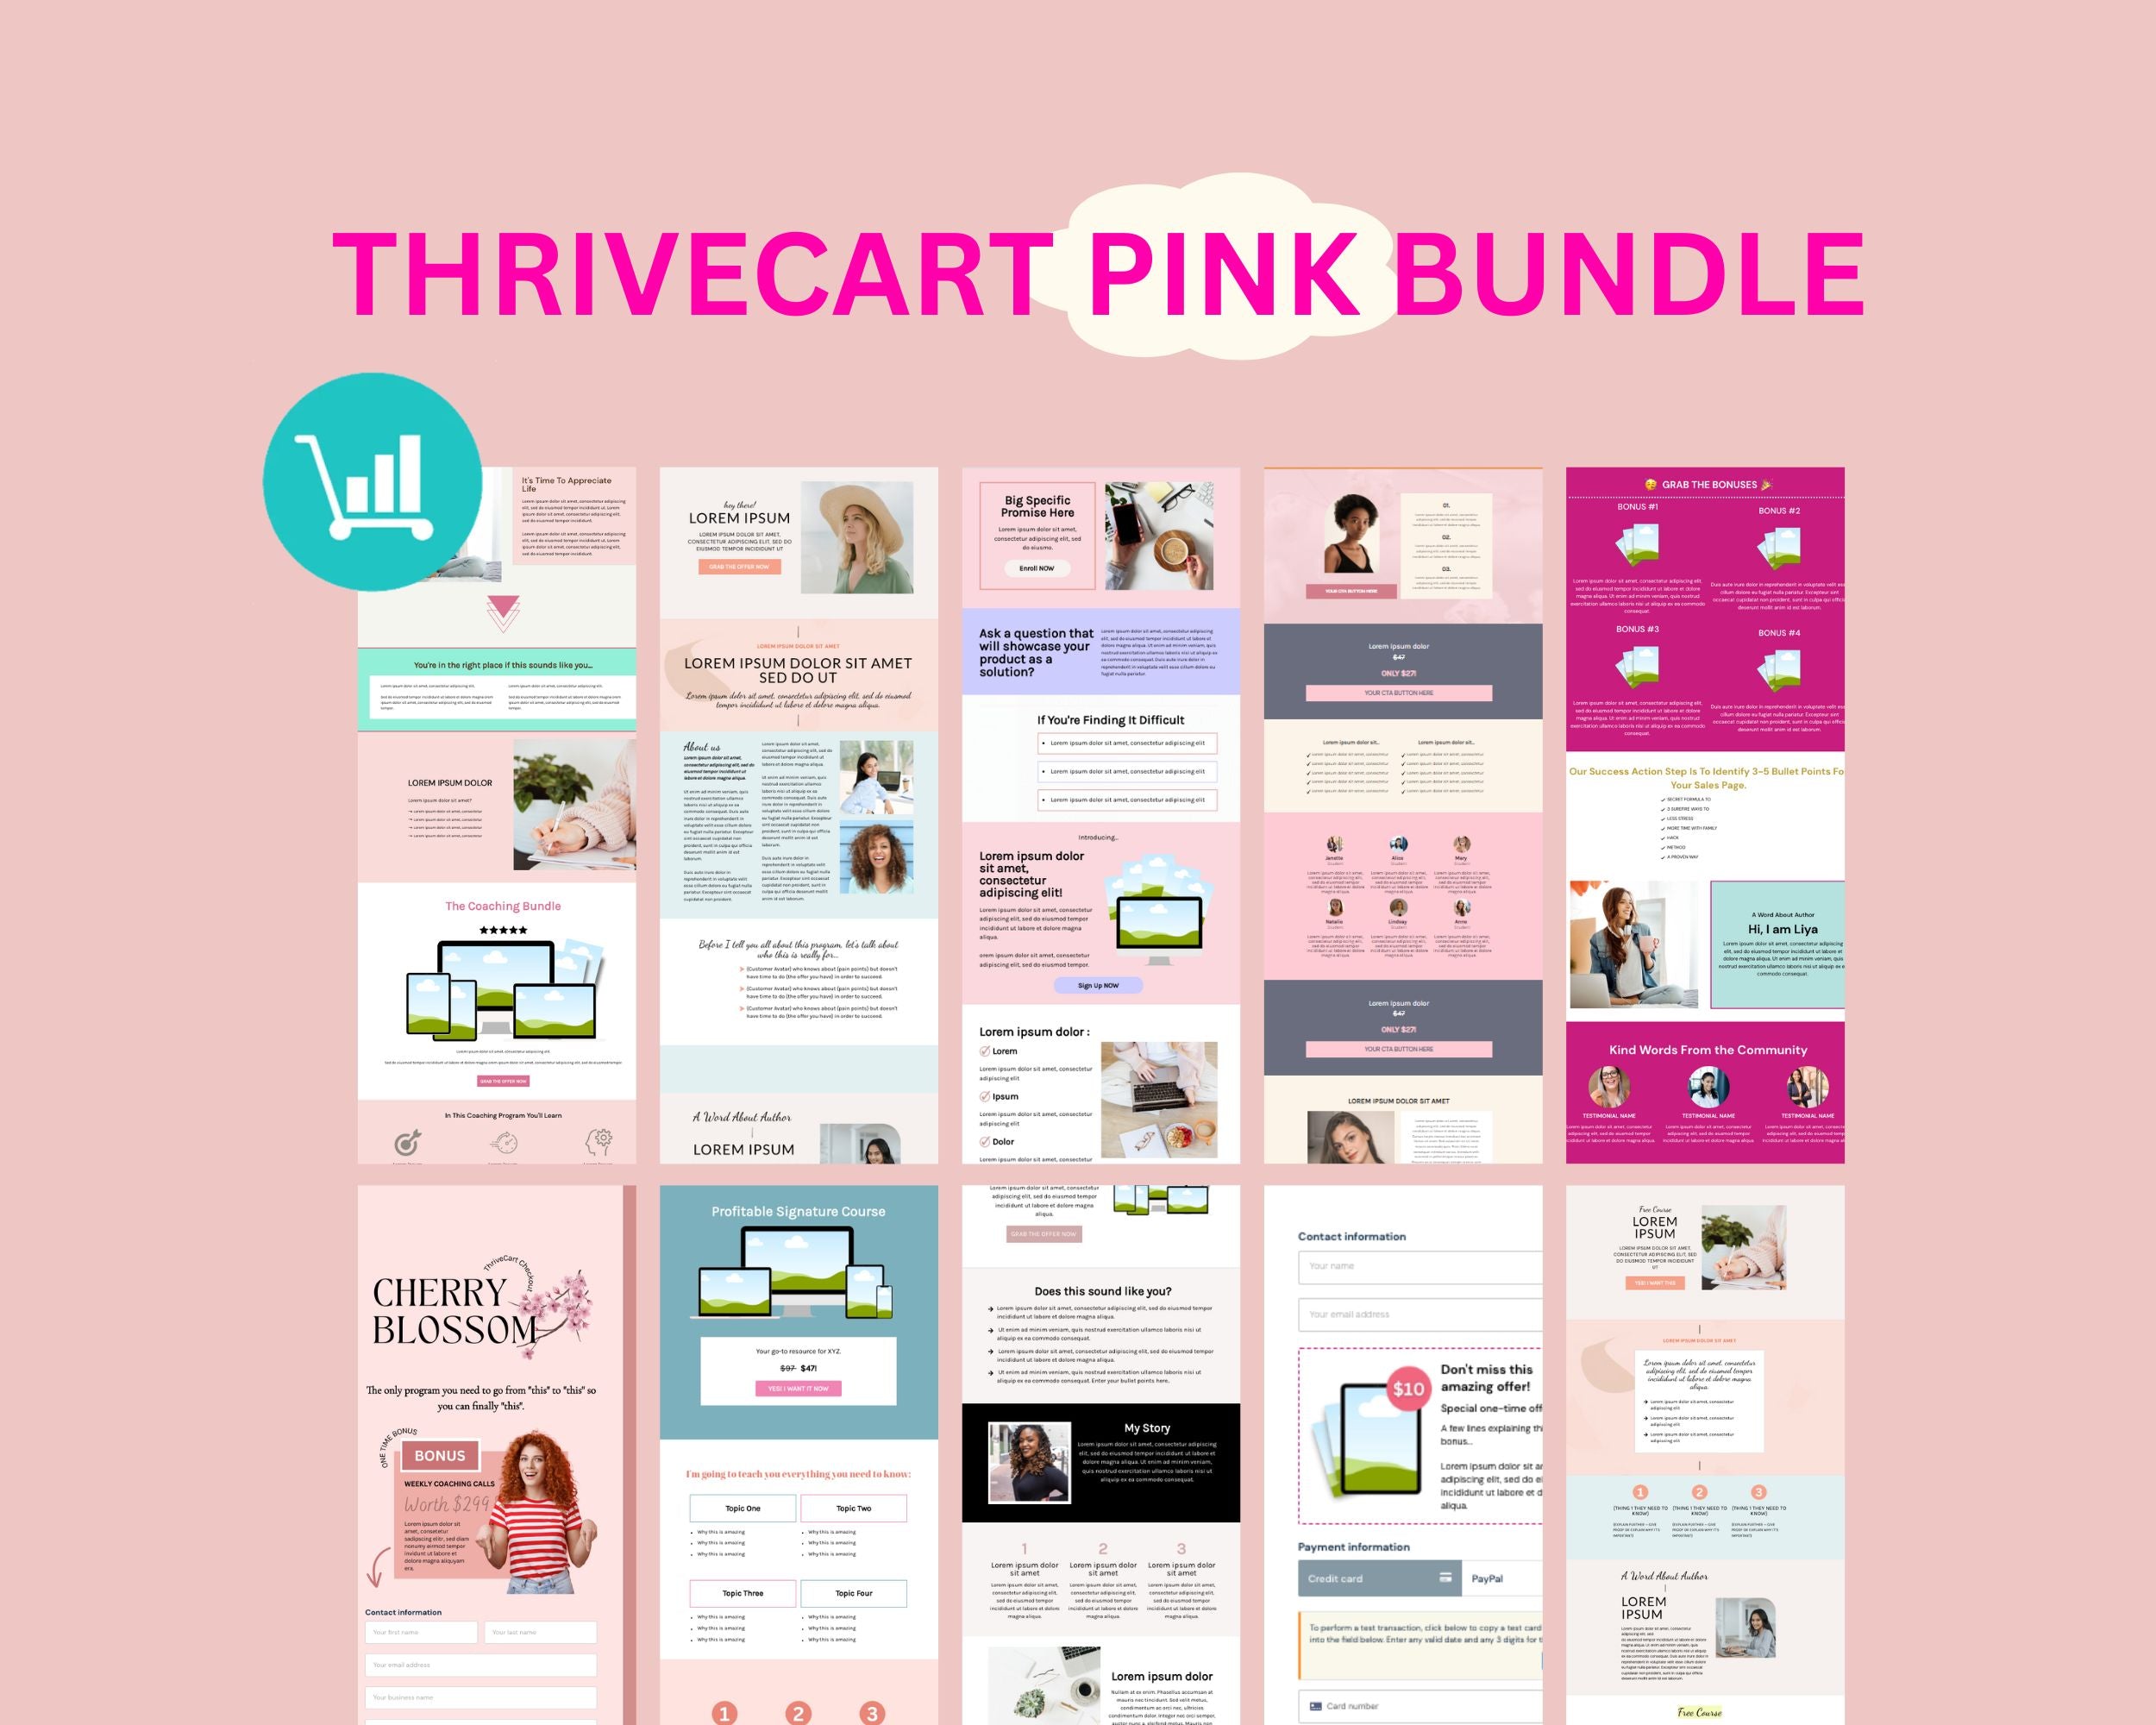 ThriveCart Pink Bundle Templates